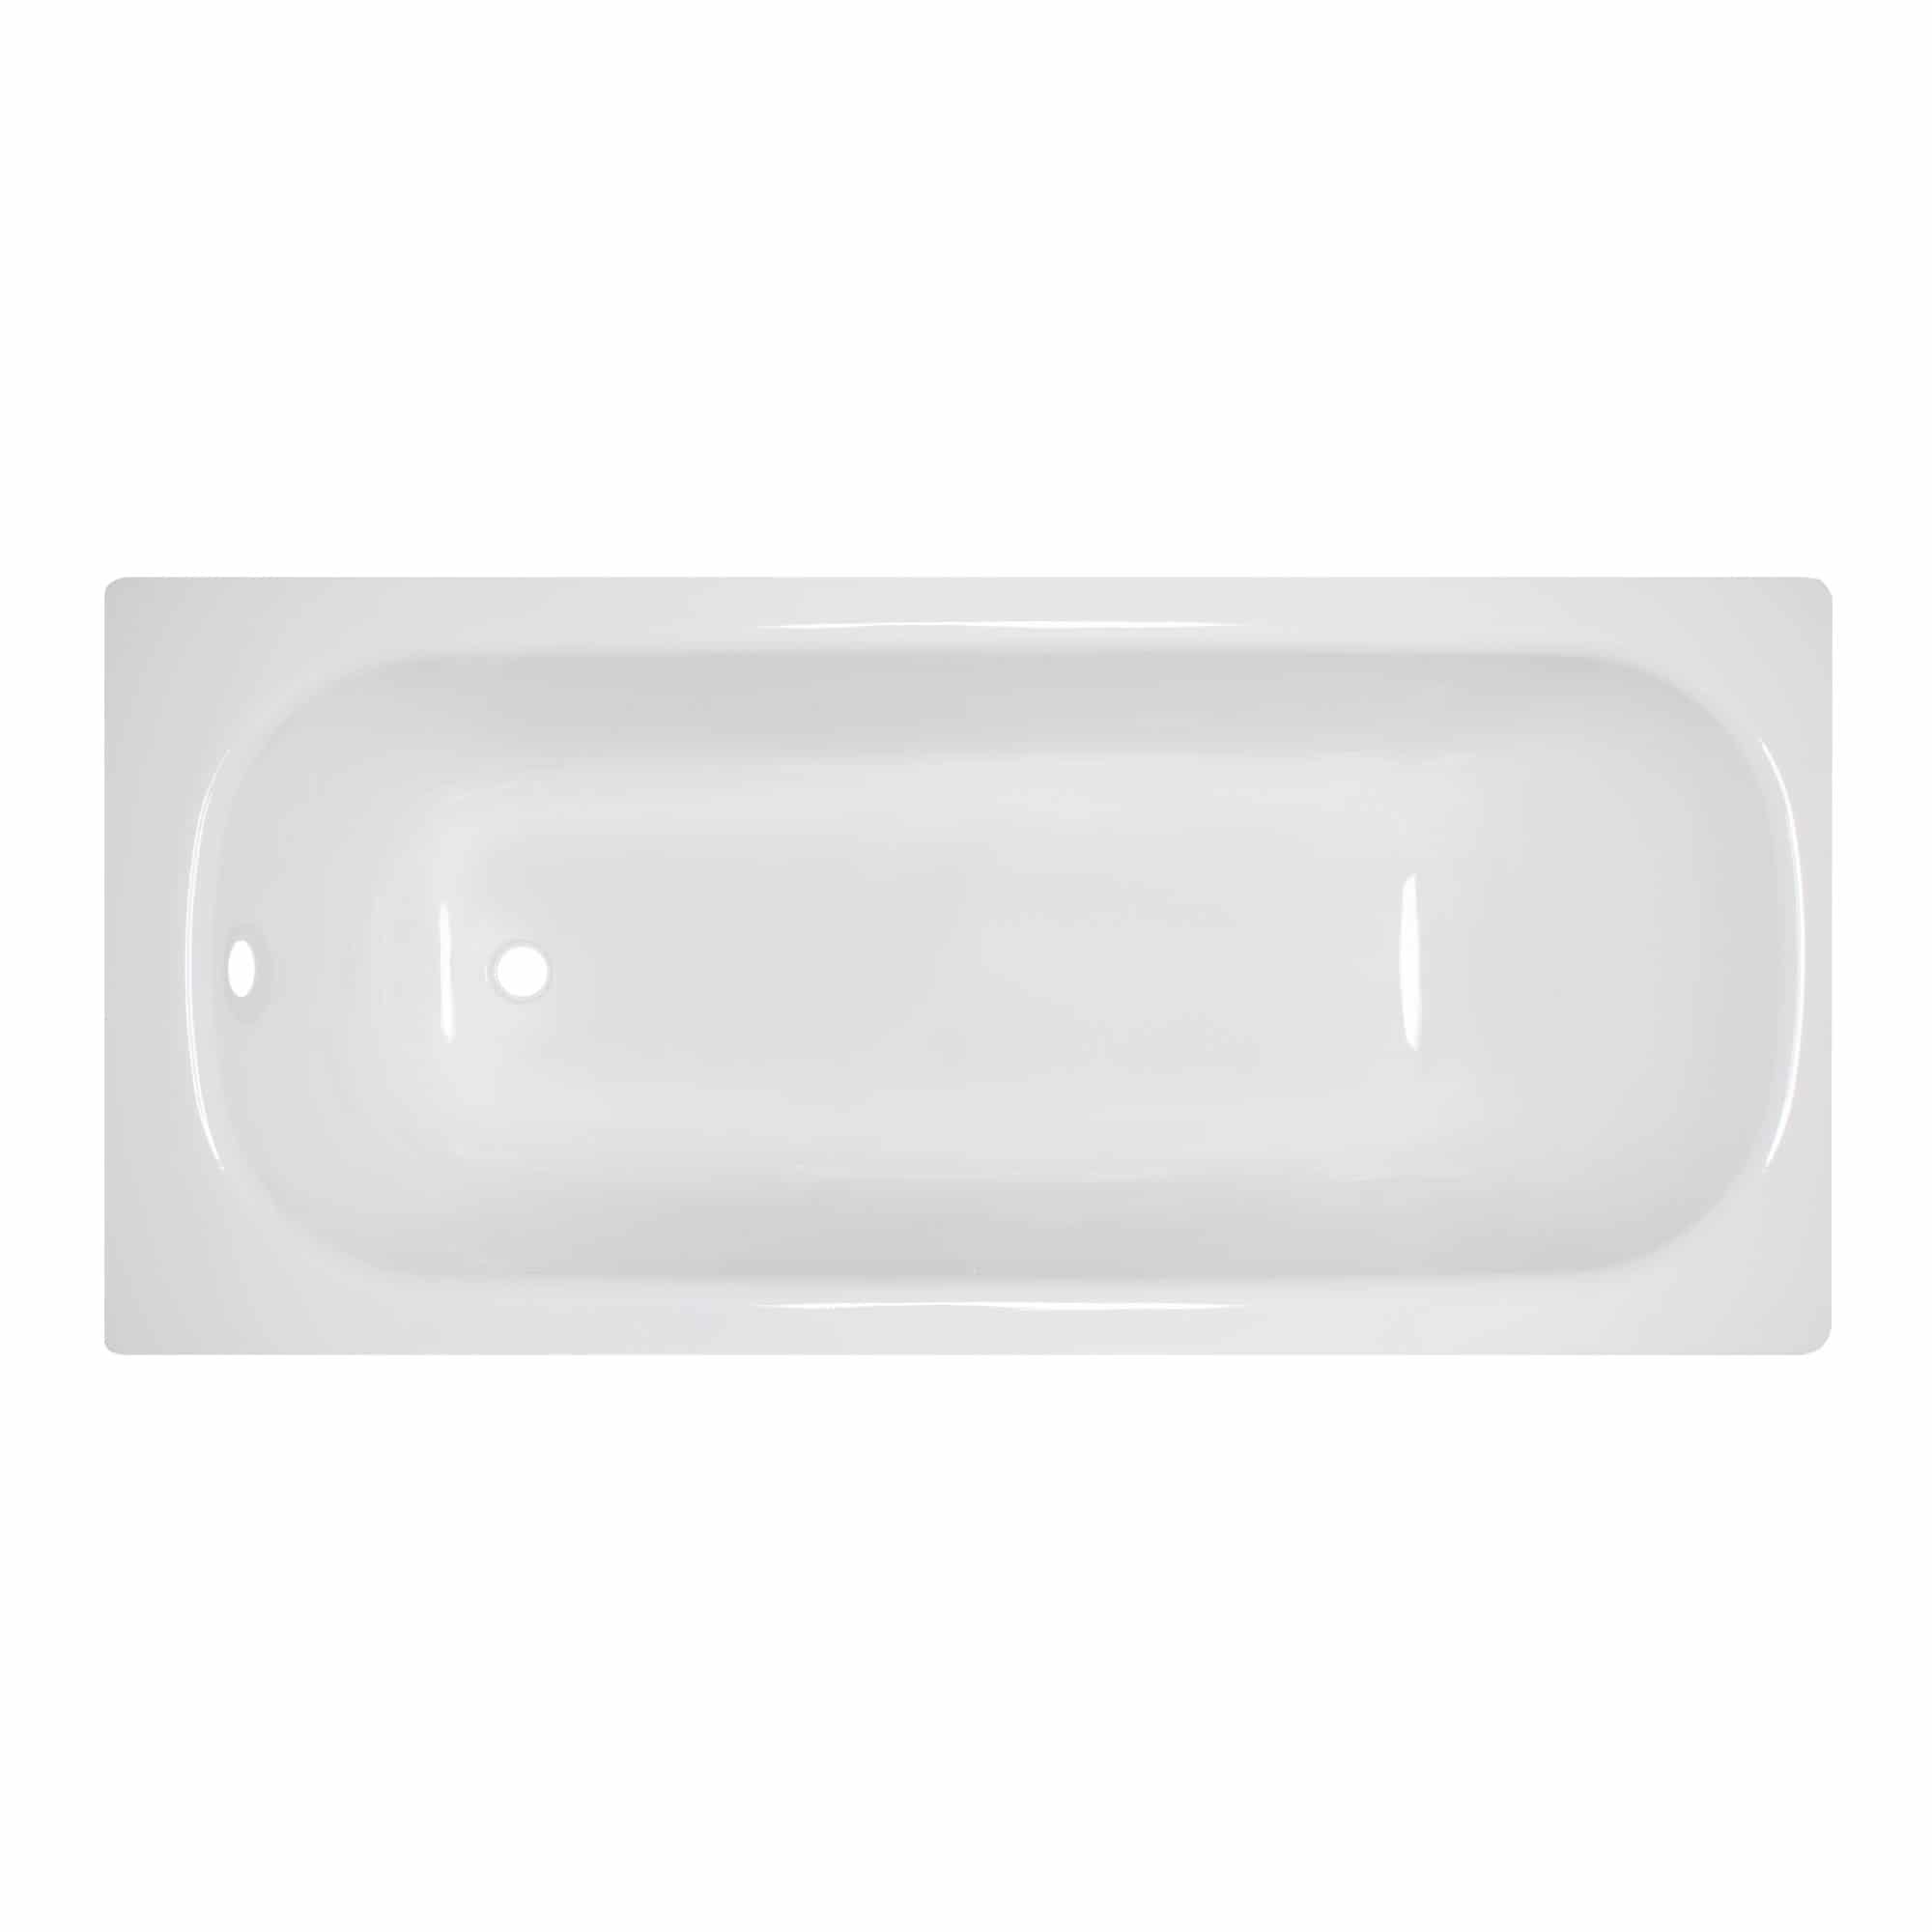 Stahl-Emaille Badewanne, rechteckig 160 cm x 70 cm, 2,4 mm, weiß